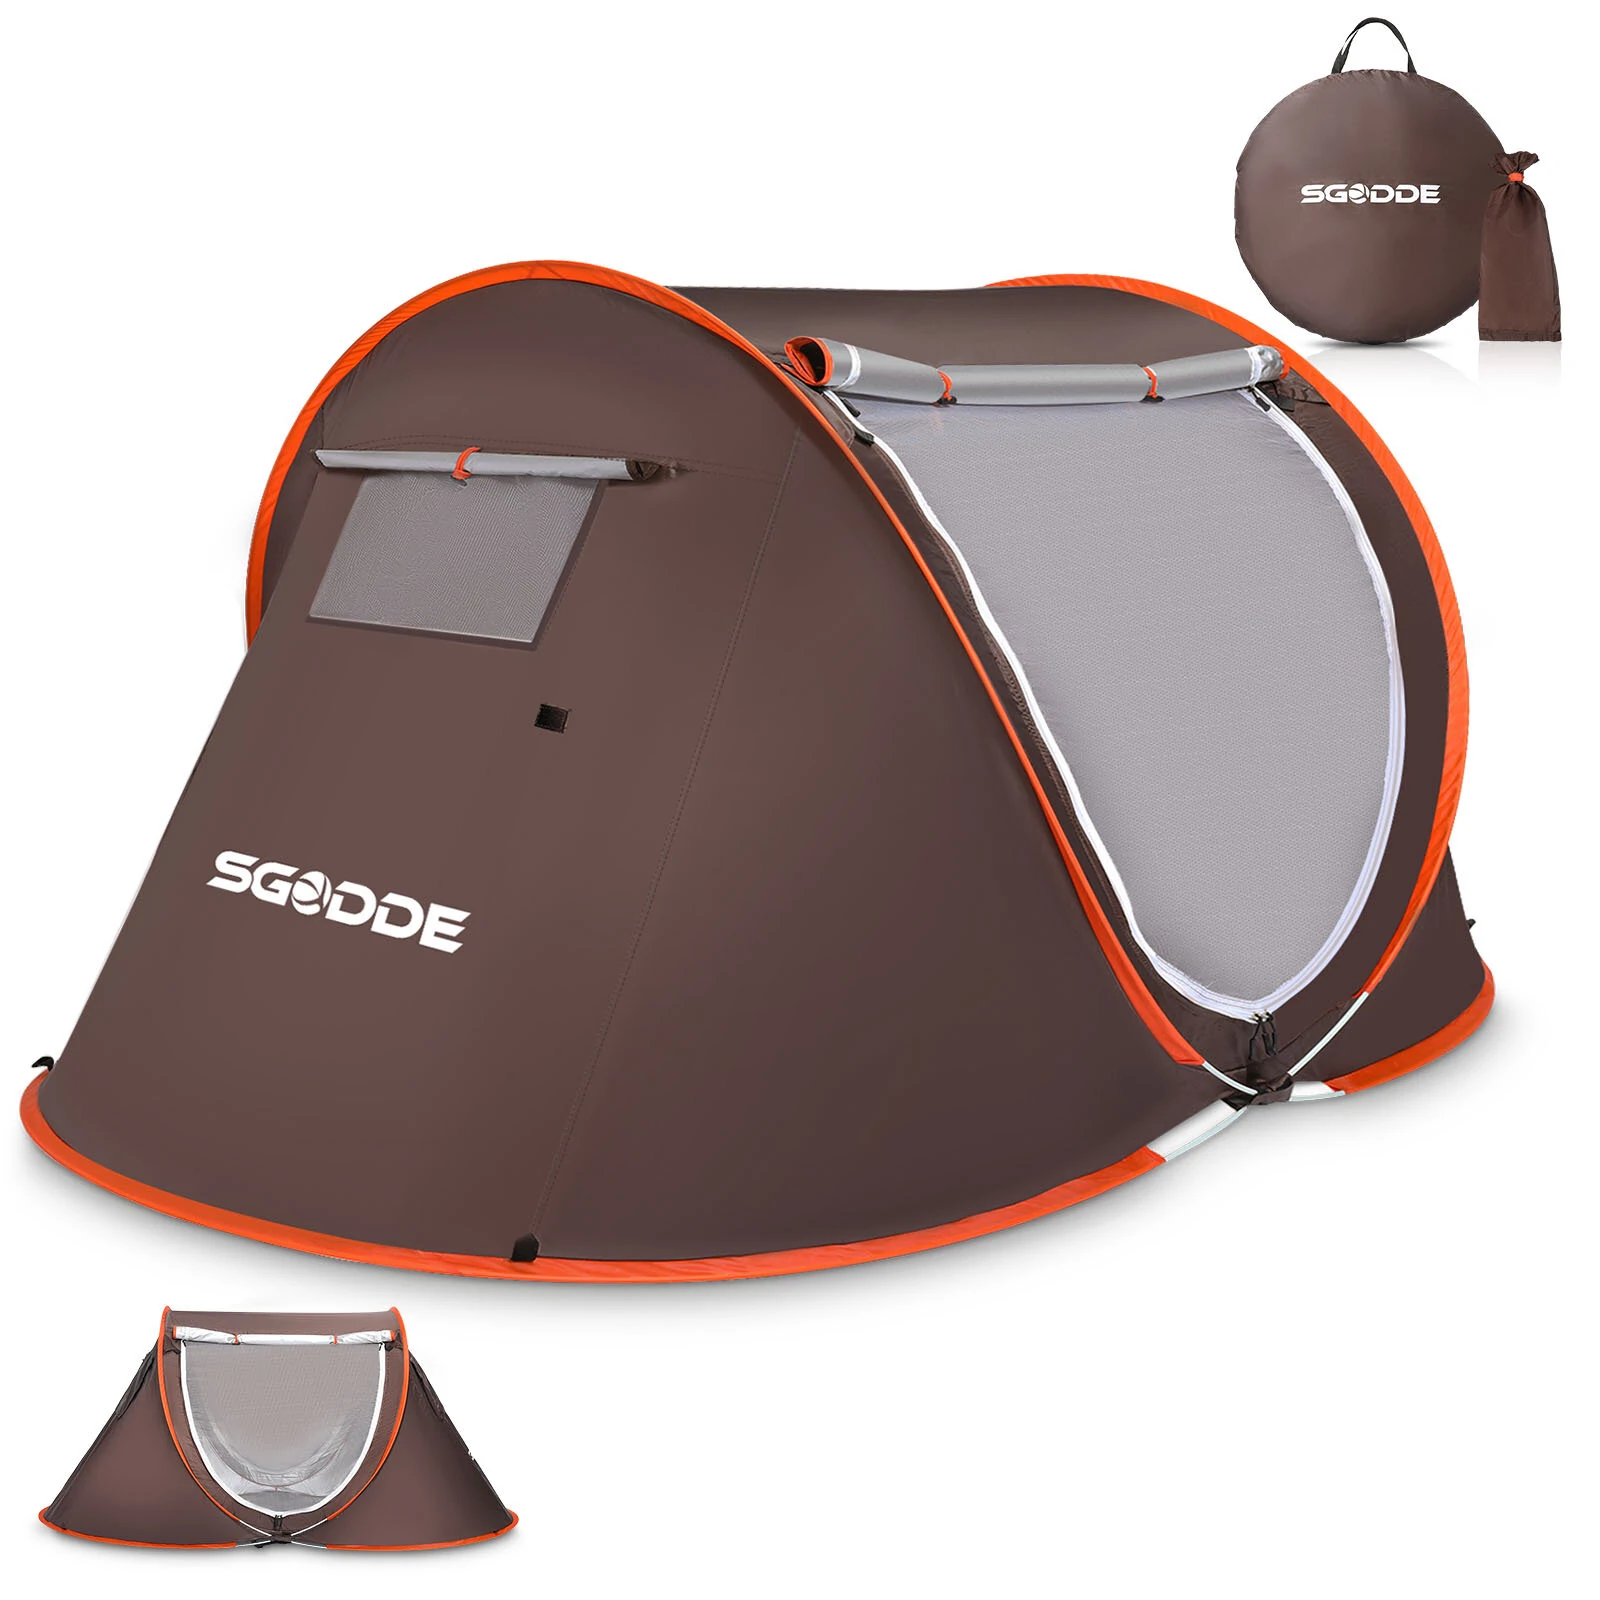 Στα 43.42€ από αποθήκη Κίνας | SGODDE 2-3 Person Tent Automatic Camping Tent Anti UV Awning Tent Waterproof Outdoor Sunshelter